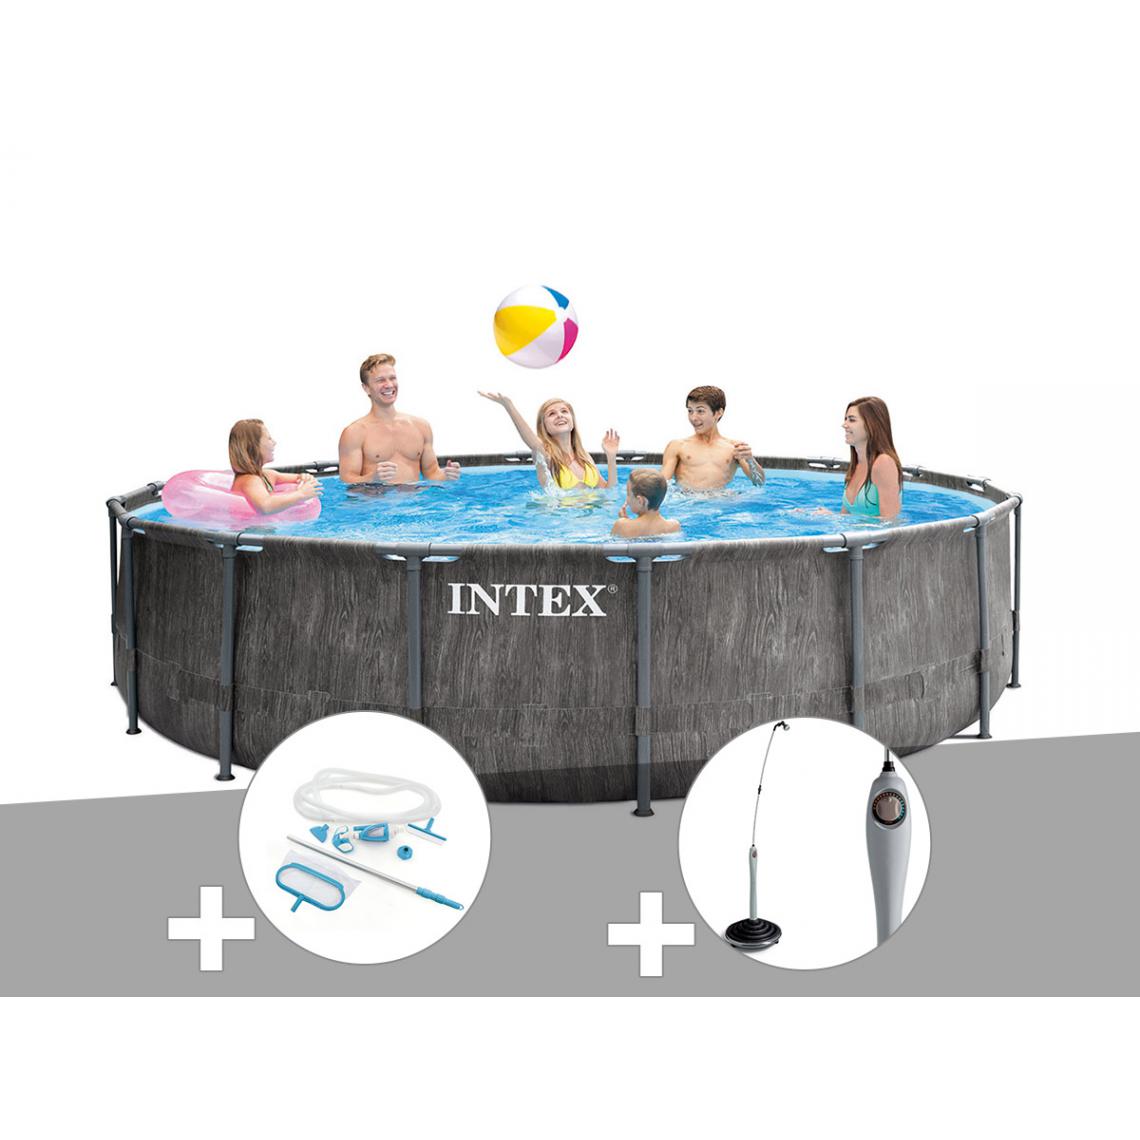 Intex - Kit piscine tubulaire Intex Baltik ronde 4,57 x 1,22 m + Kit d'entretien + Douche solaire - Piscine Tubulaire